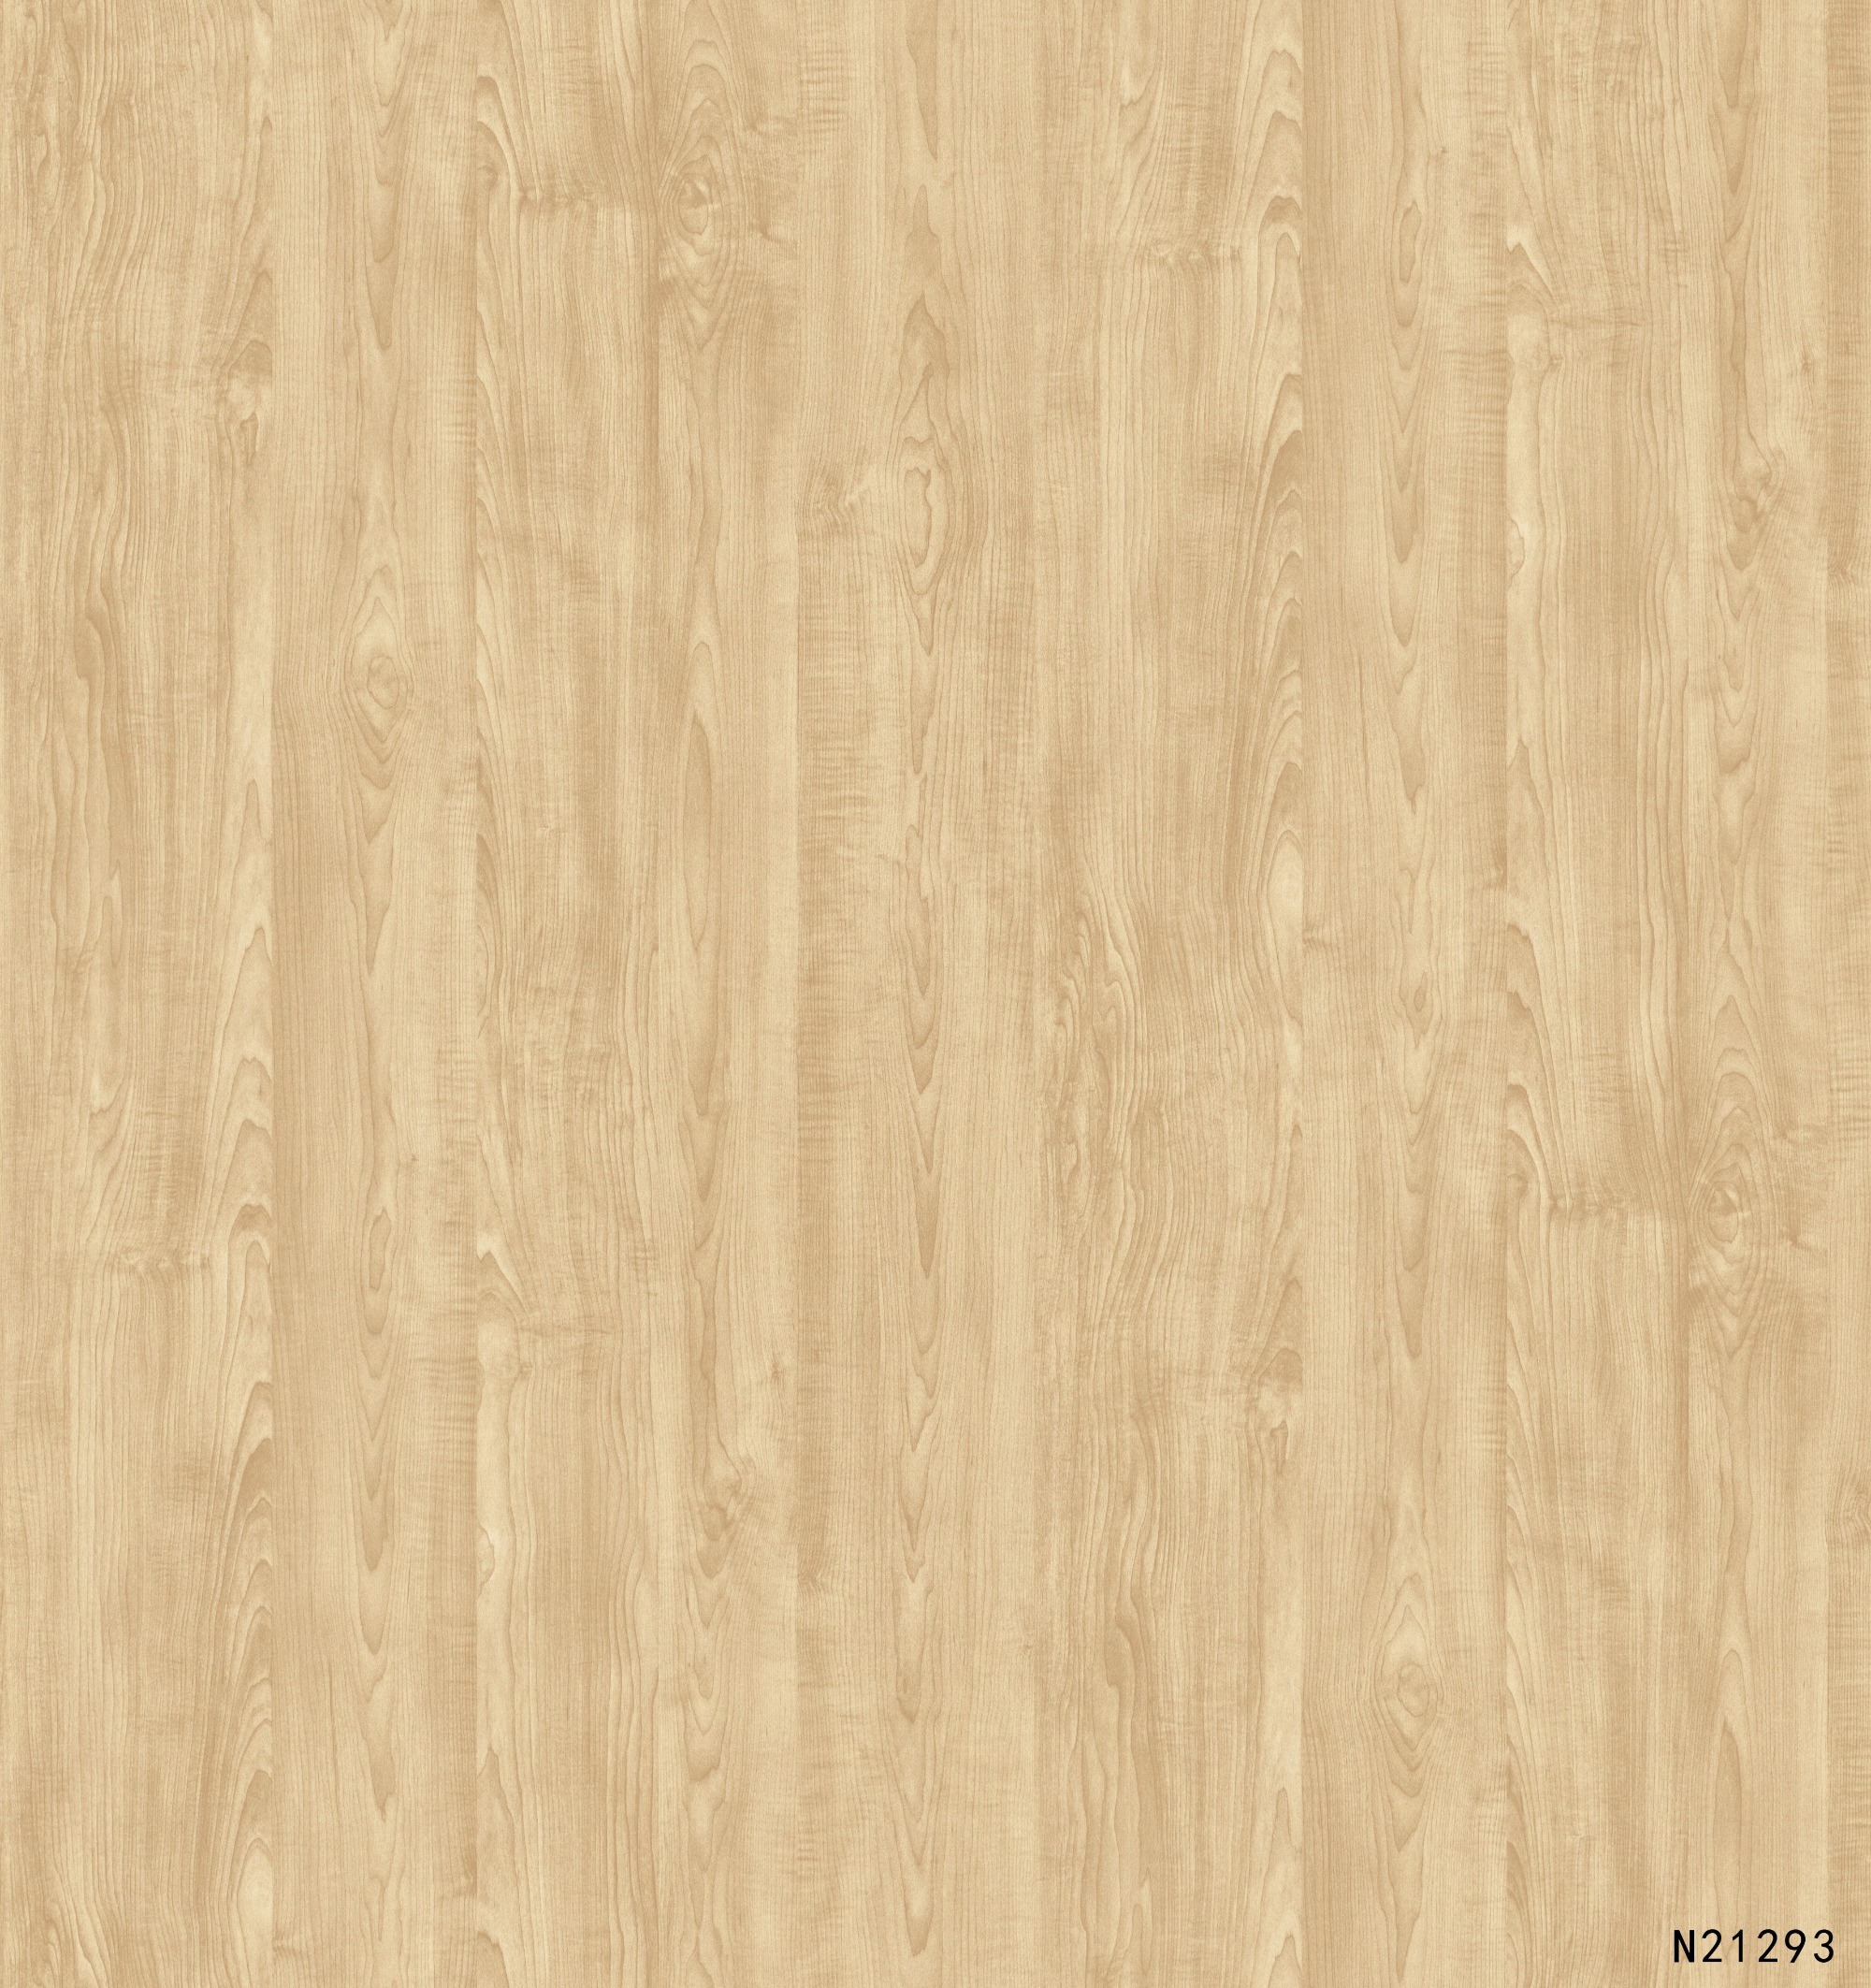 N21293 Melamine paper with wood grain